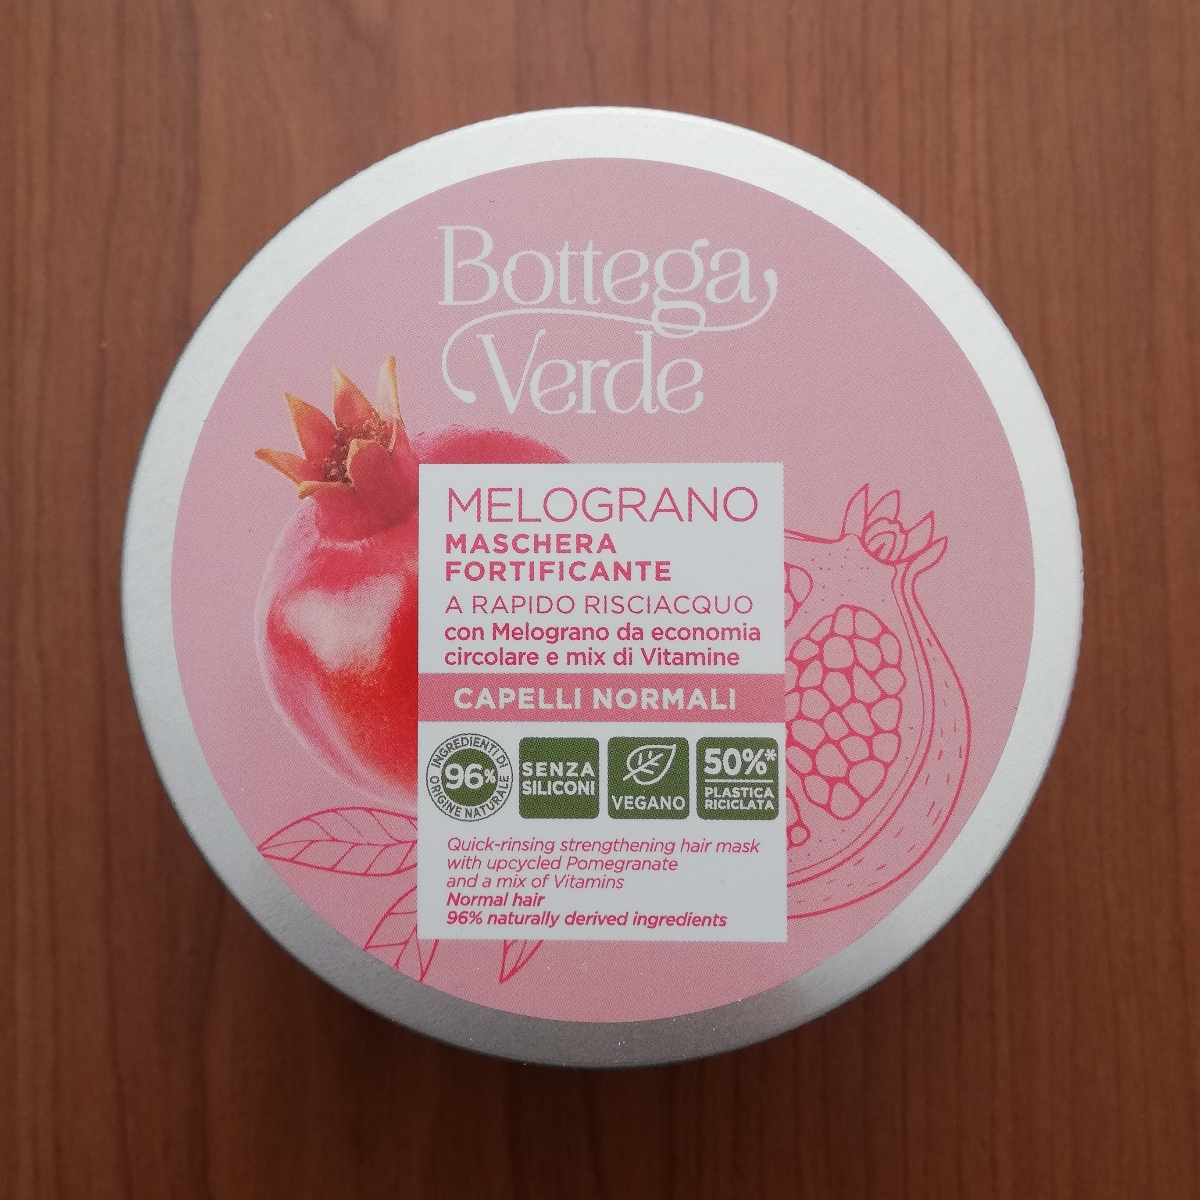 Bottega Verde Melograno Maschera Fortificante Reviews | abillion